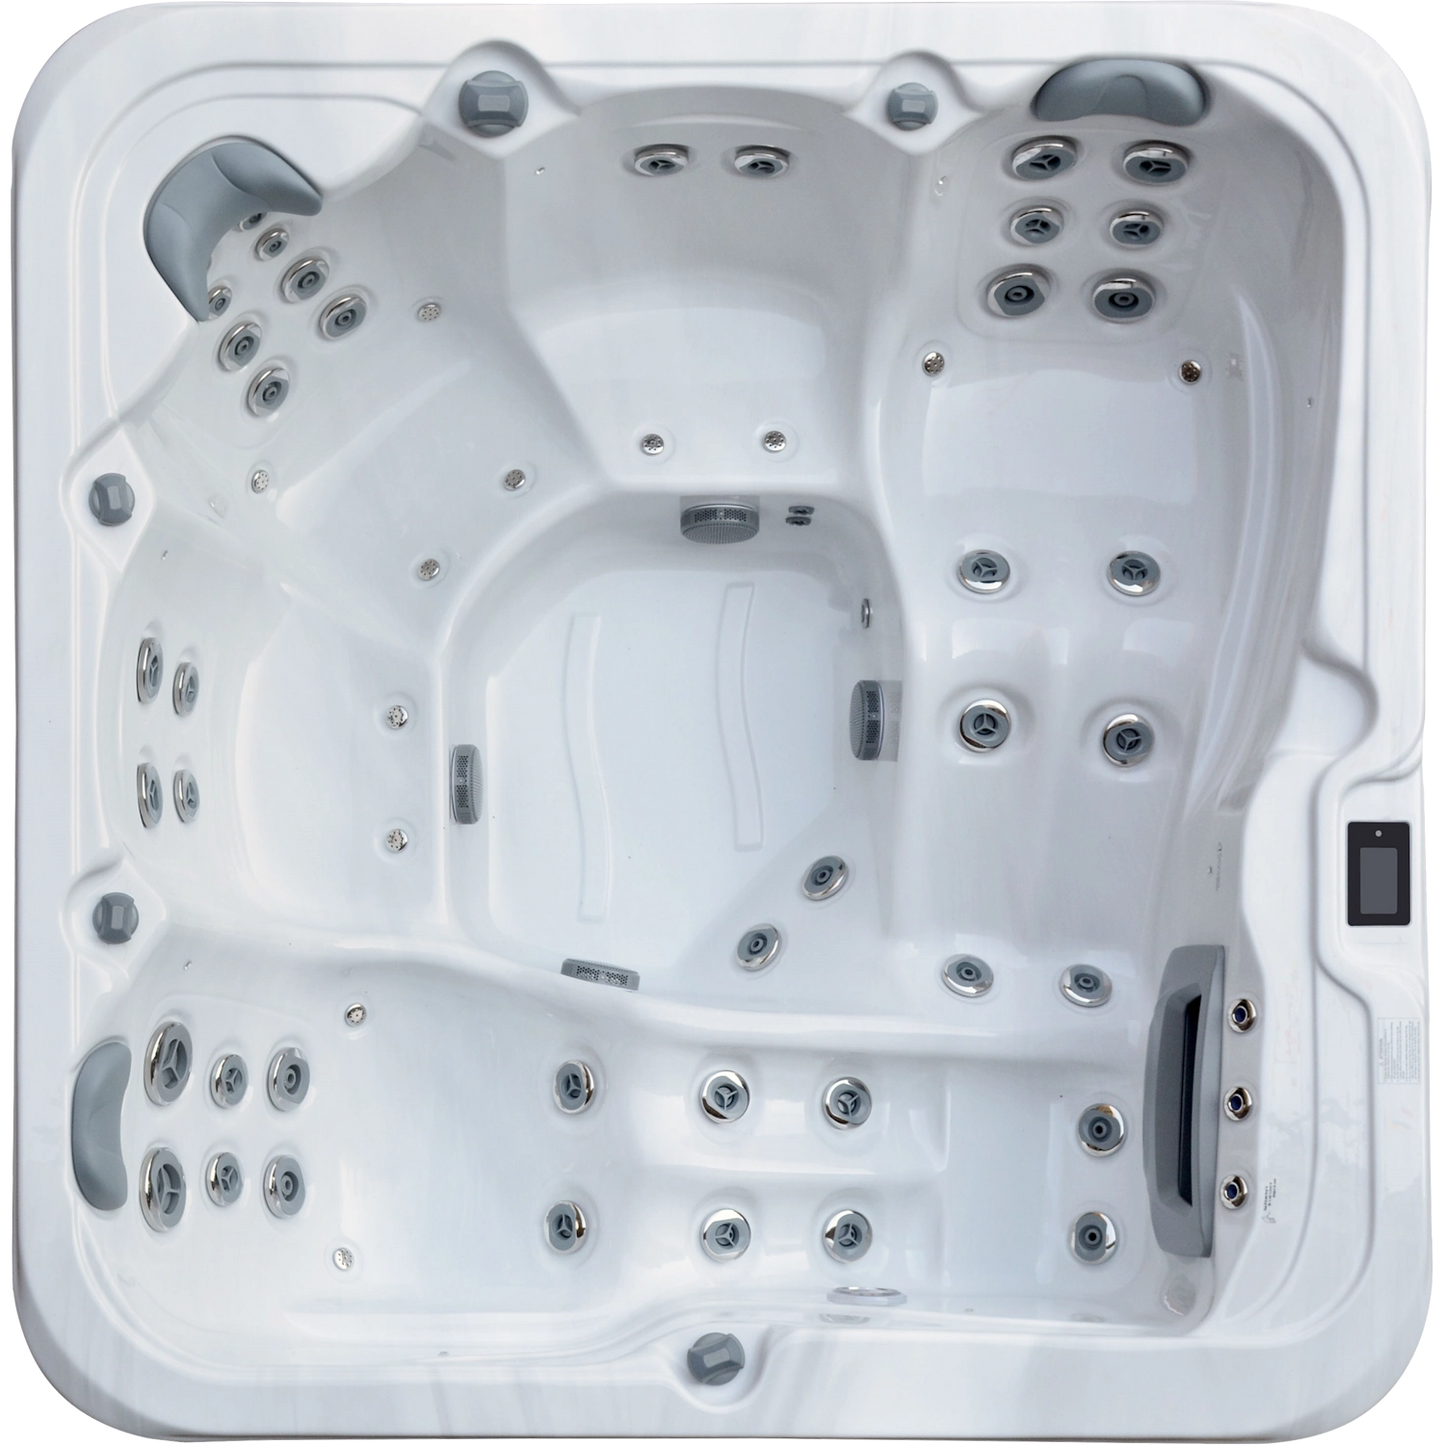 RX-570 Heatwave - 5 Person Hot Tub Oasis Spas